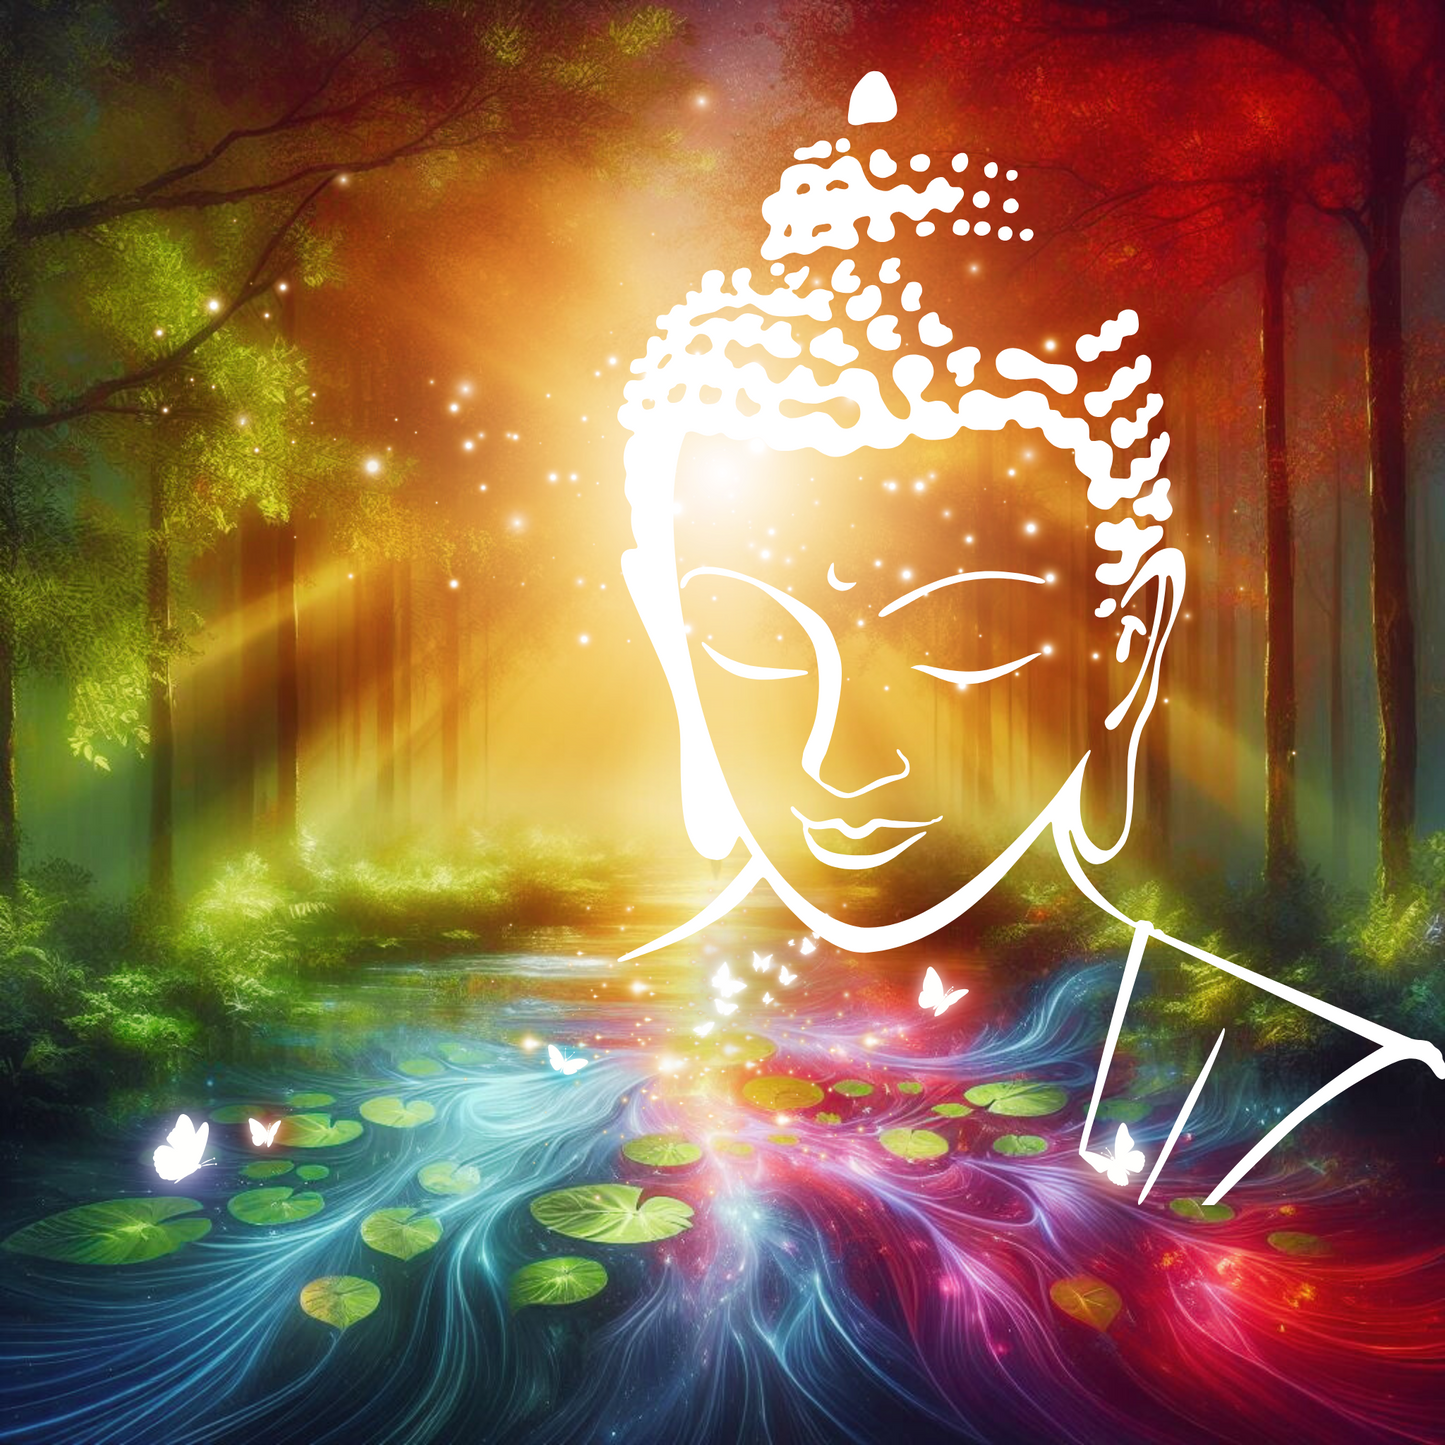 Buddha Kopf vor fließendem Gewässer das in Chakra Farben leuchtet. Ein Wald.